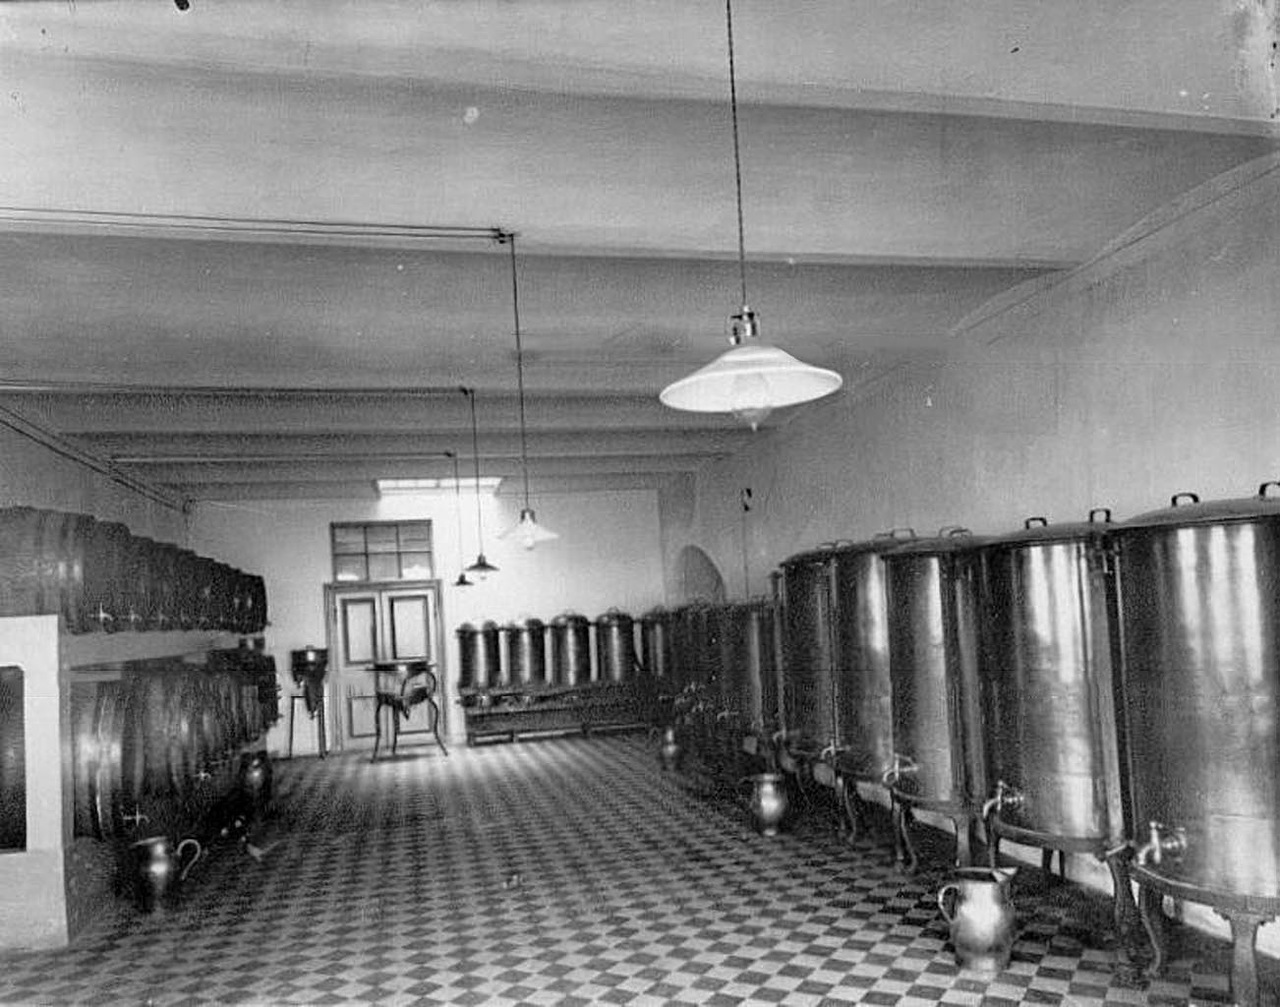 През 1911 г. „Keller & K°“ е наградена с голямата награда на световното изложение в Торино. След спечелването на редица състезания това е най-голямата награда на компанията. Иронично тази награда е последвана от закони, които забраняват алкохола в Русия в началото на Първата световна война. / Винарска изба.